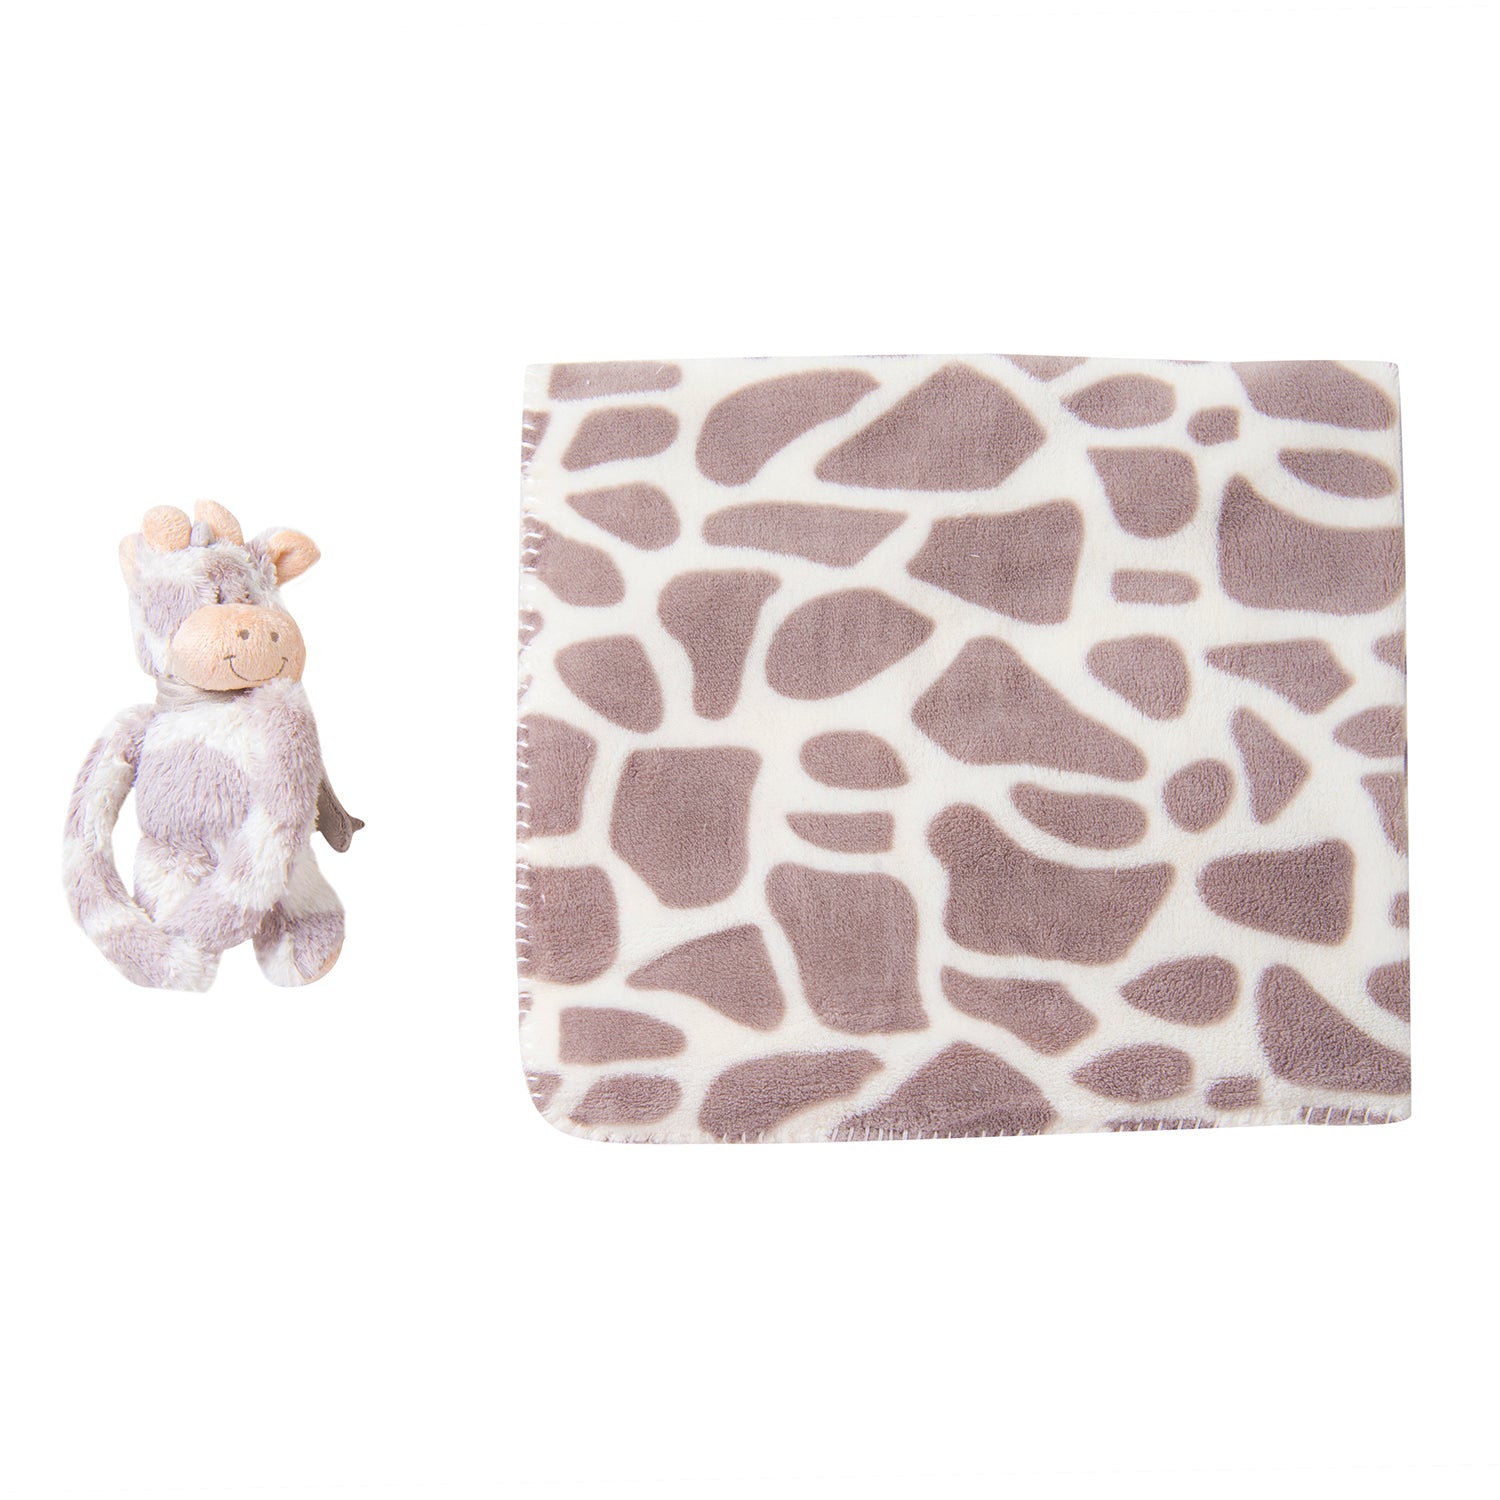 Giraffe Spots Soft Cozy Plush Toy Blanket Grey - Baby Moo